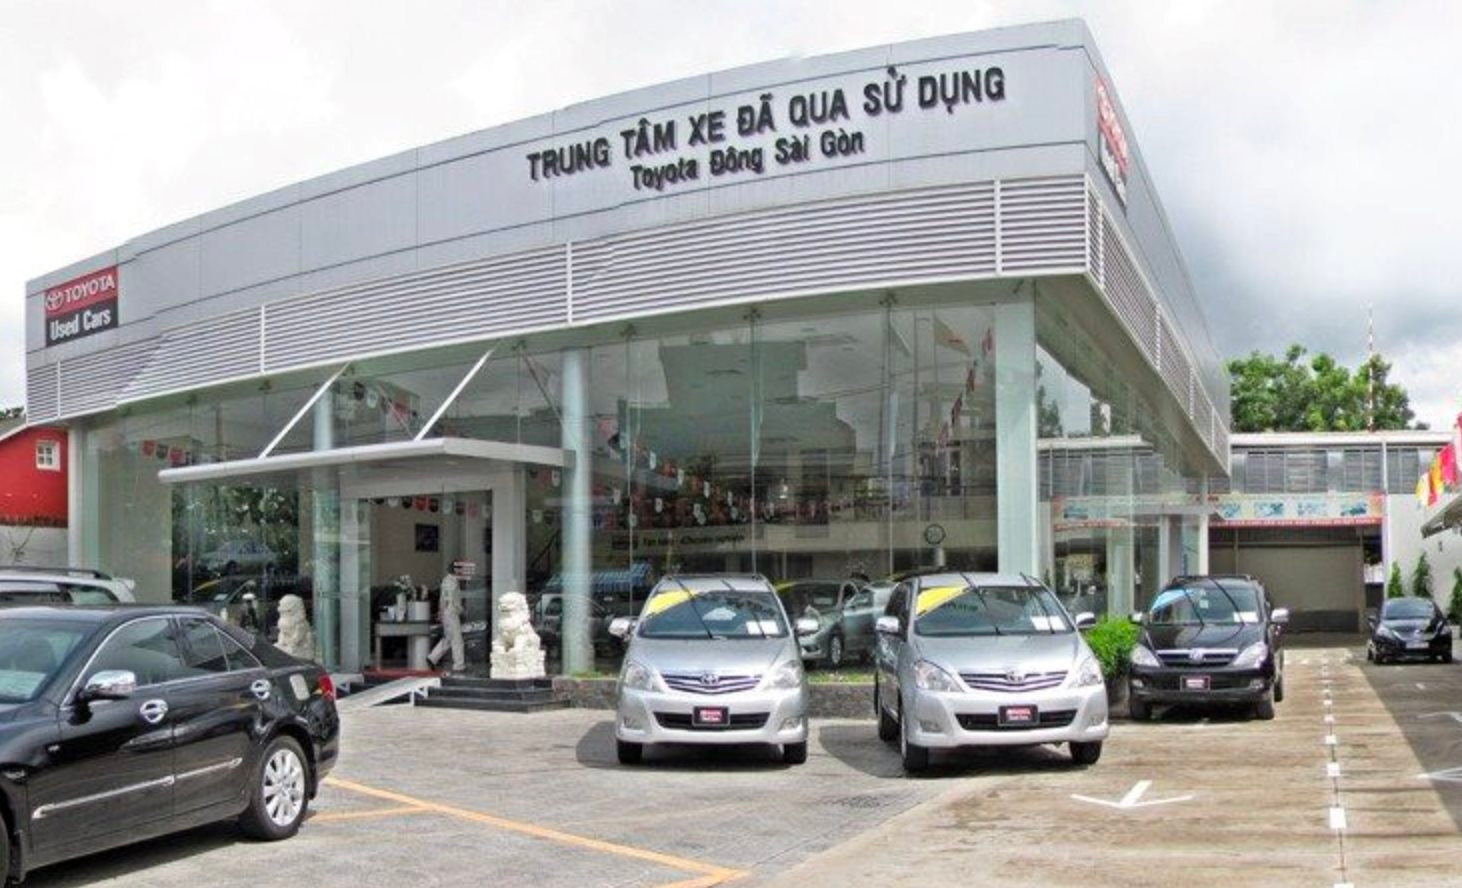 Tuyên chiến cùng “đại gia” xe hơi Haxaco, Tasco Auto…, Chợ Tốt mở chuỗi bán “ô tô đã qua sử dụng” với tham vọng 1.000 điểm bán- Ảnh 1.